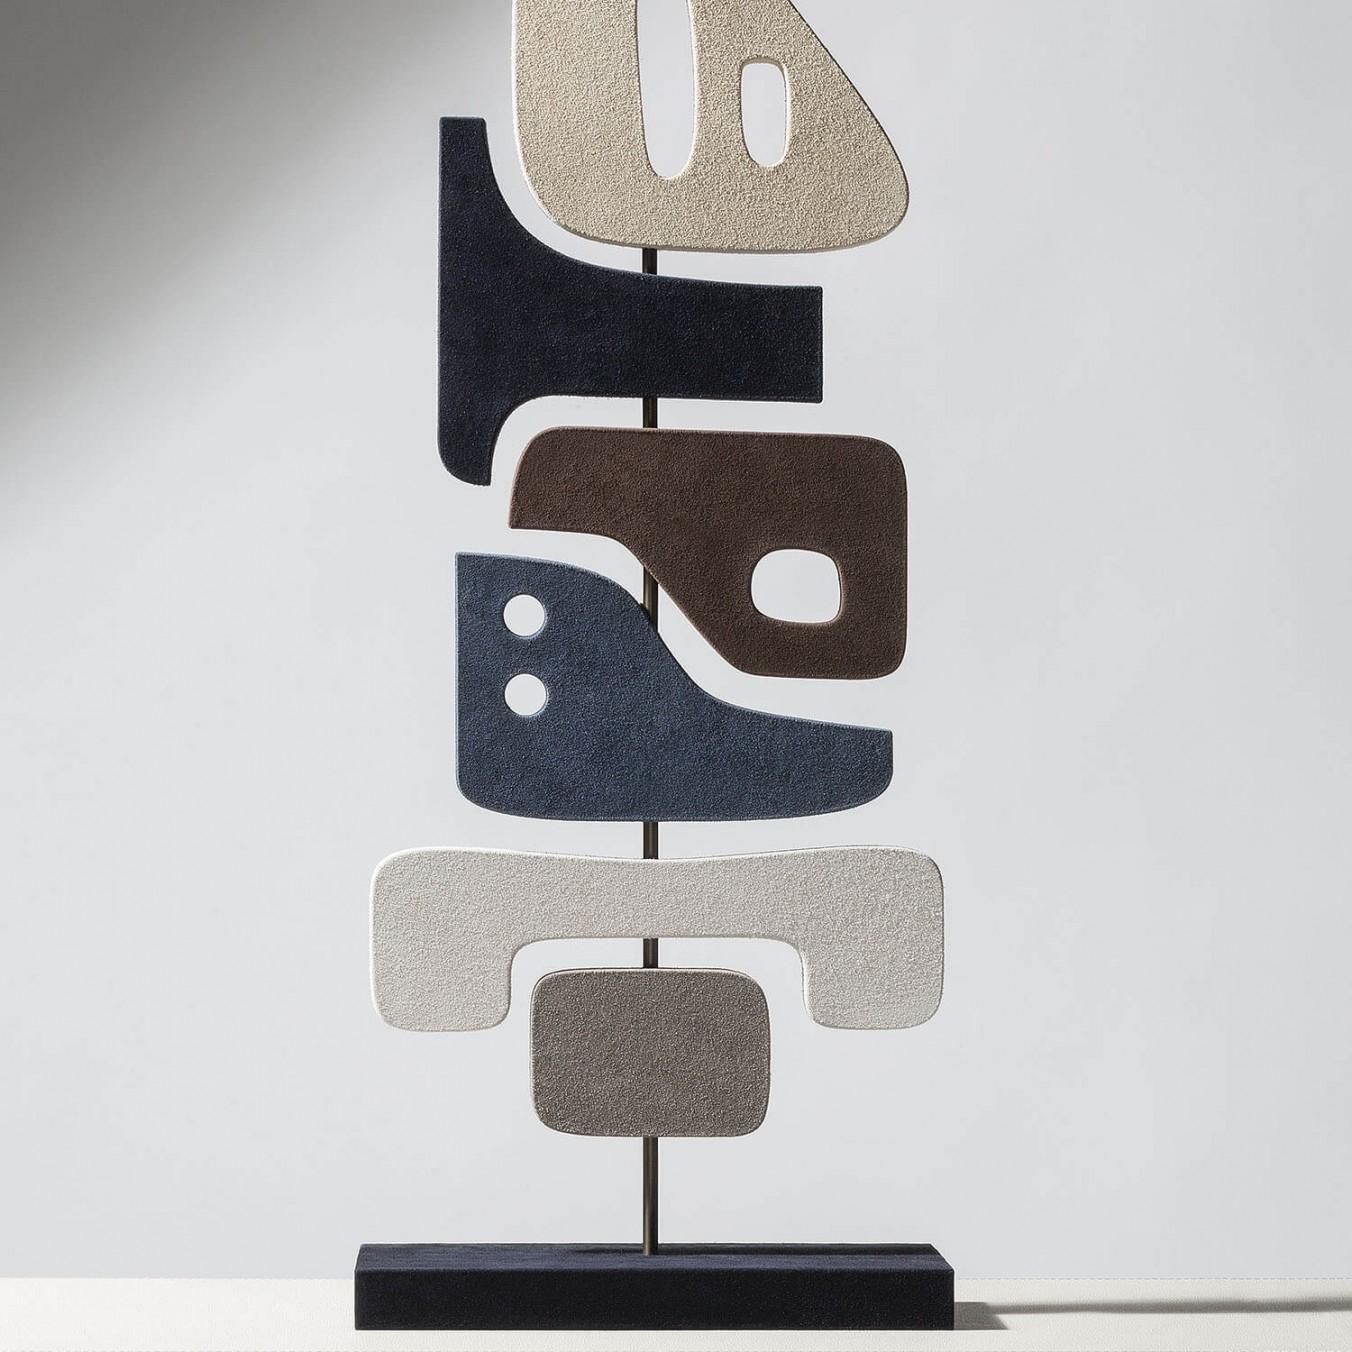 Zeitgenössische Lederskulptur - Tabou 3 von Stephane Parmentier für Giobagnara.

Diese zeitgenössischen Totems, eine Mischung aus Space-Age-Design und Stammeskunst, sind großartige Dekorationsstücke, die eine Verbindung zwischen Abstraktion und